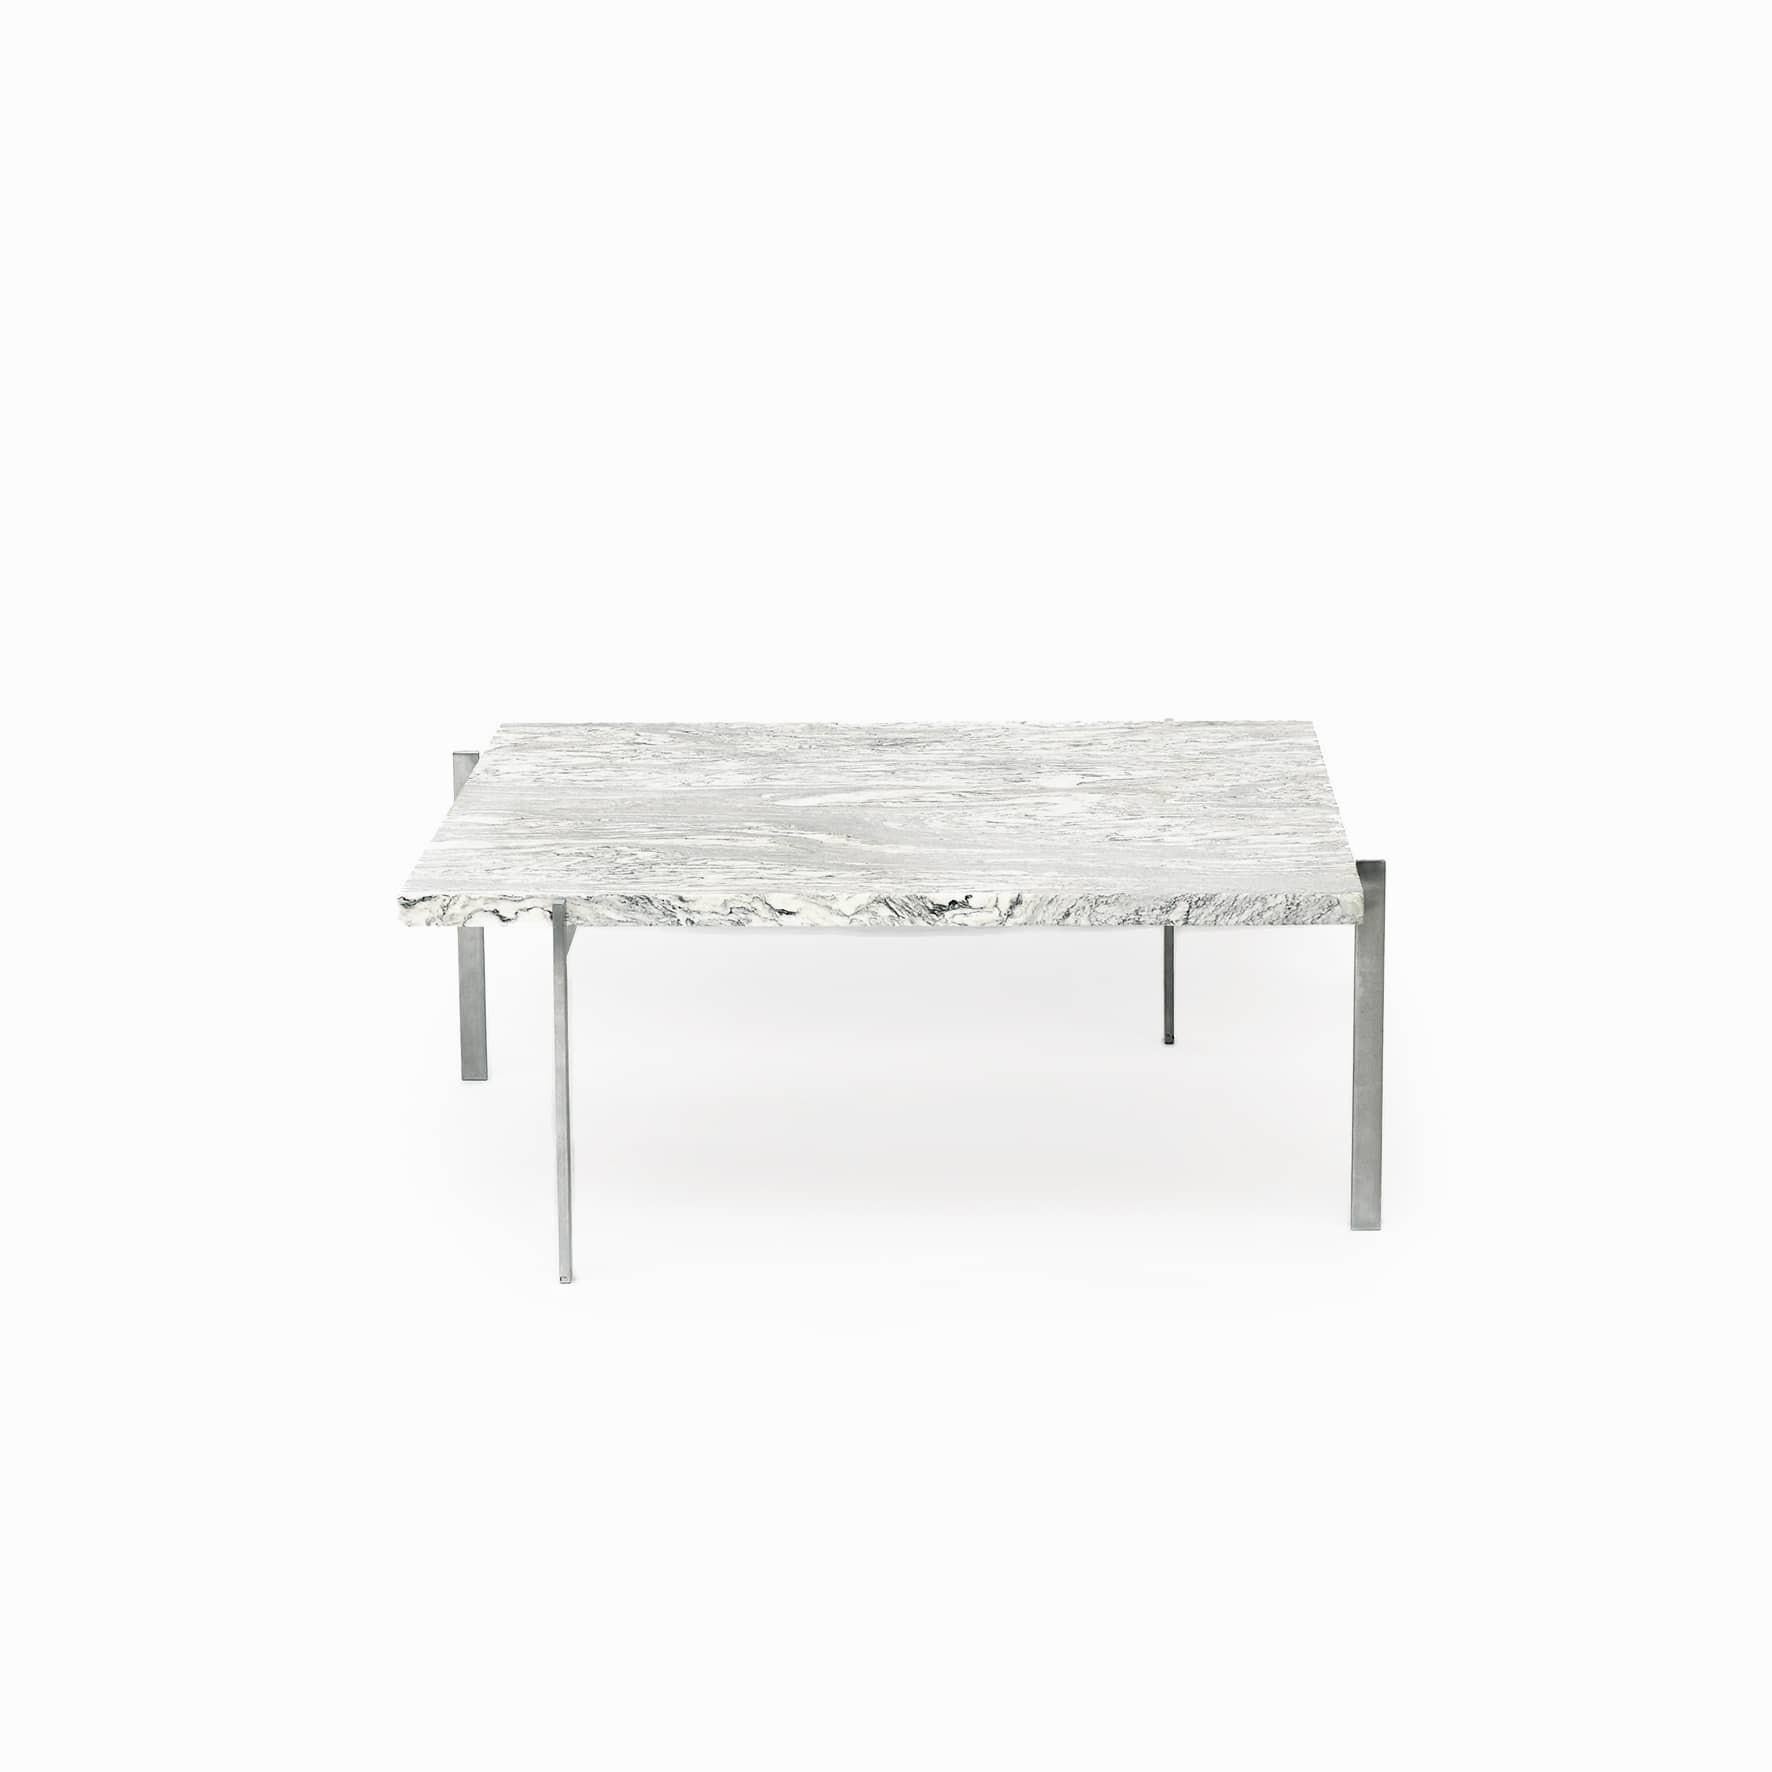 Poul Kjærholm 1929 - 1980.
Couchtisch PK 61, Entwurf 1956.
Hergestellt aus mattem Stahl, schöne Tischplatte aus gewalztem Cipollini-Marmor.

Produziert von Kold Christensen, dem Markenzeichen von diesem.